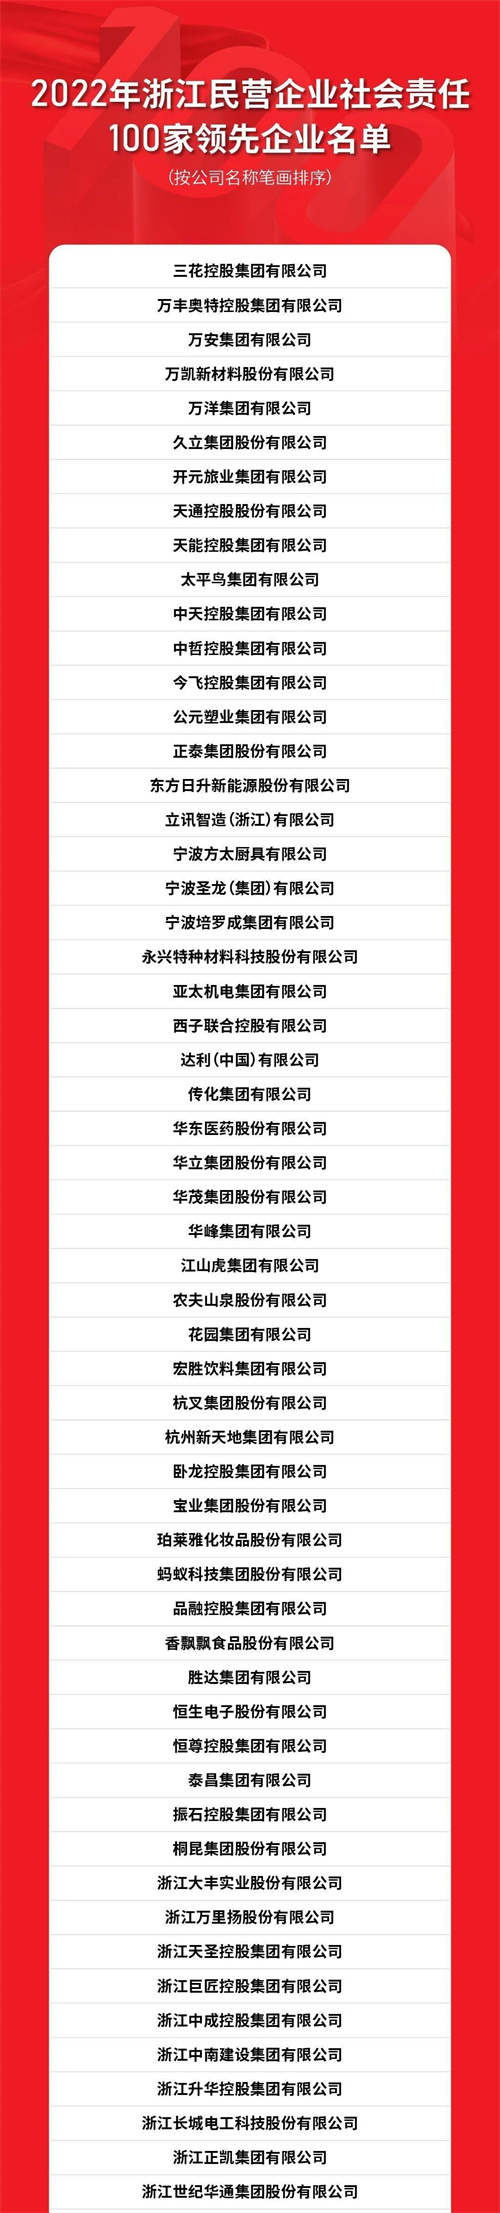 康恩贝集团上榜2022浙江民营企业社会责任100家领先企业(图2)